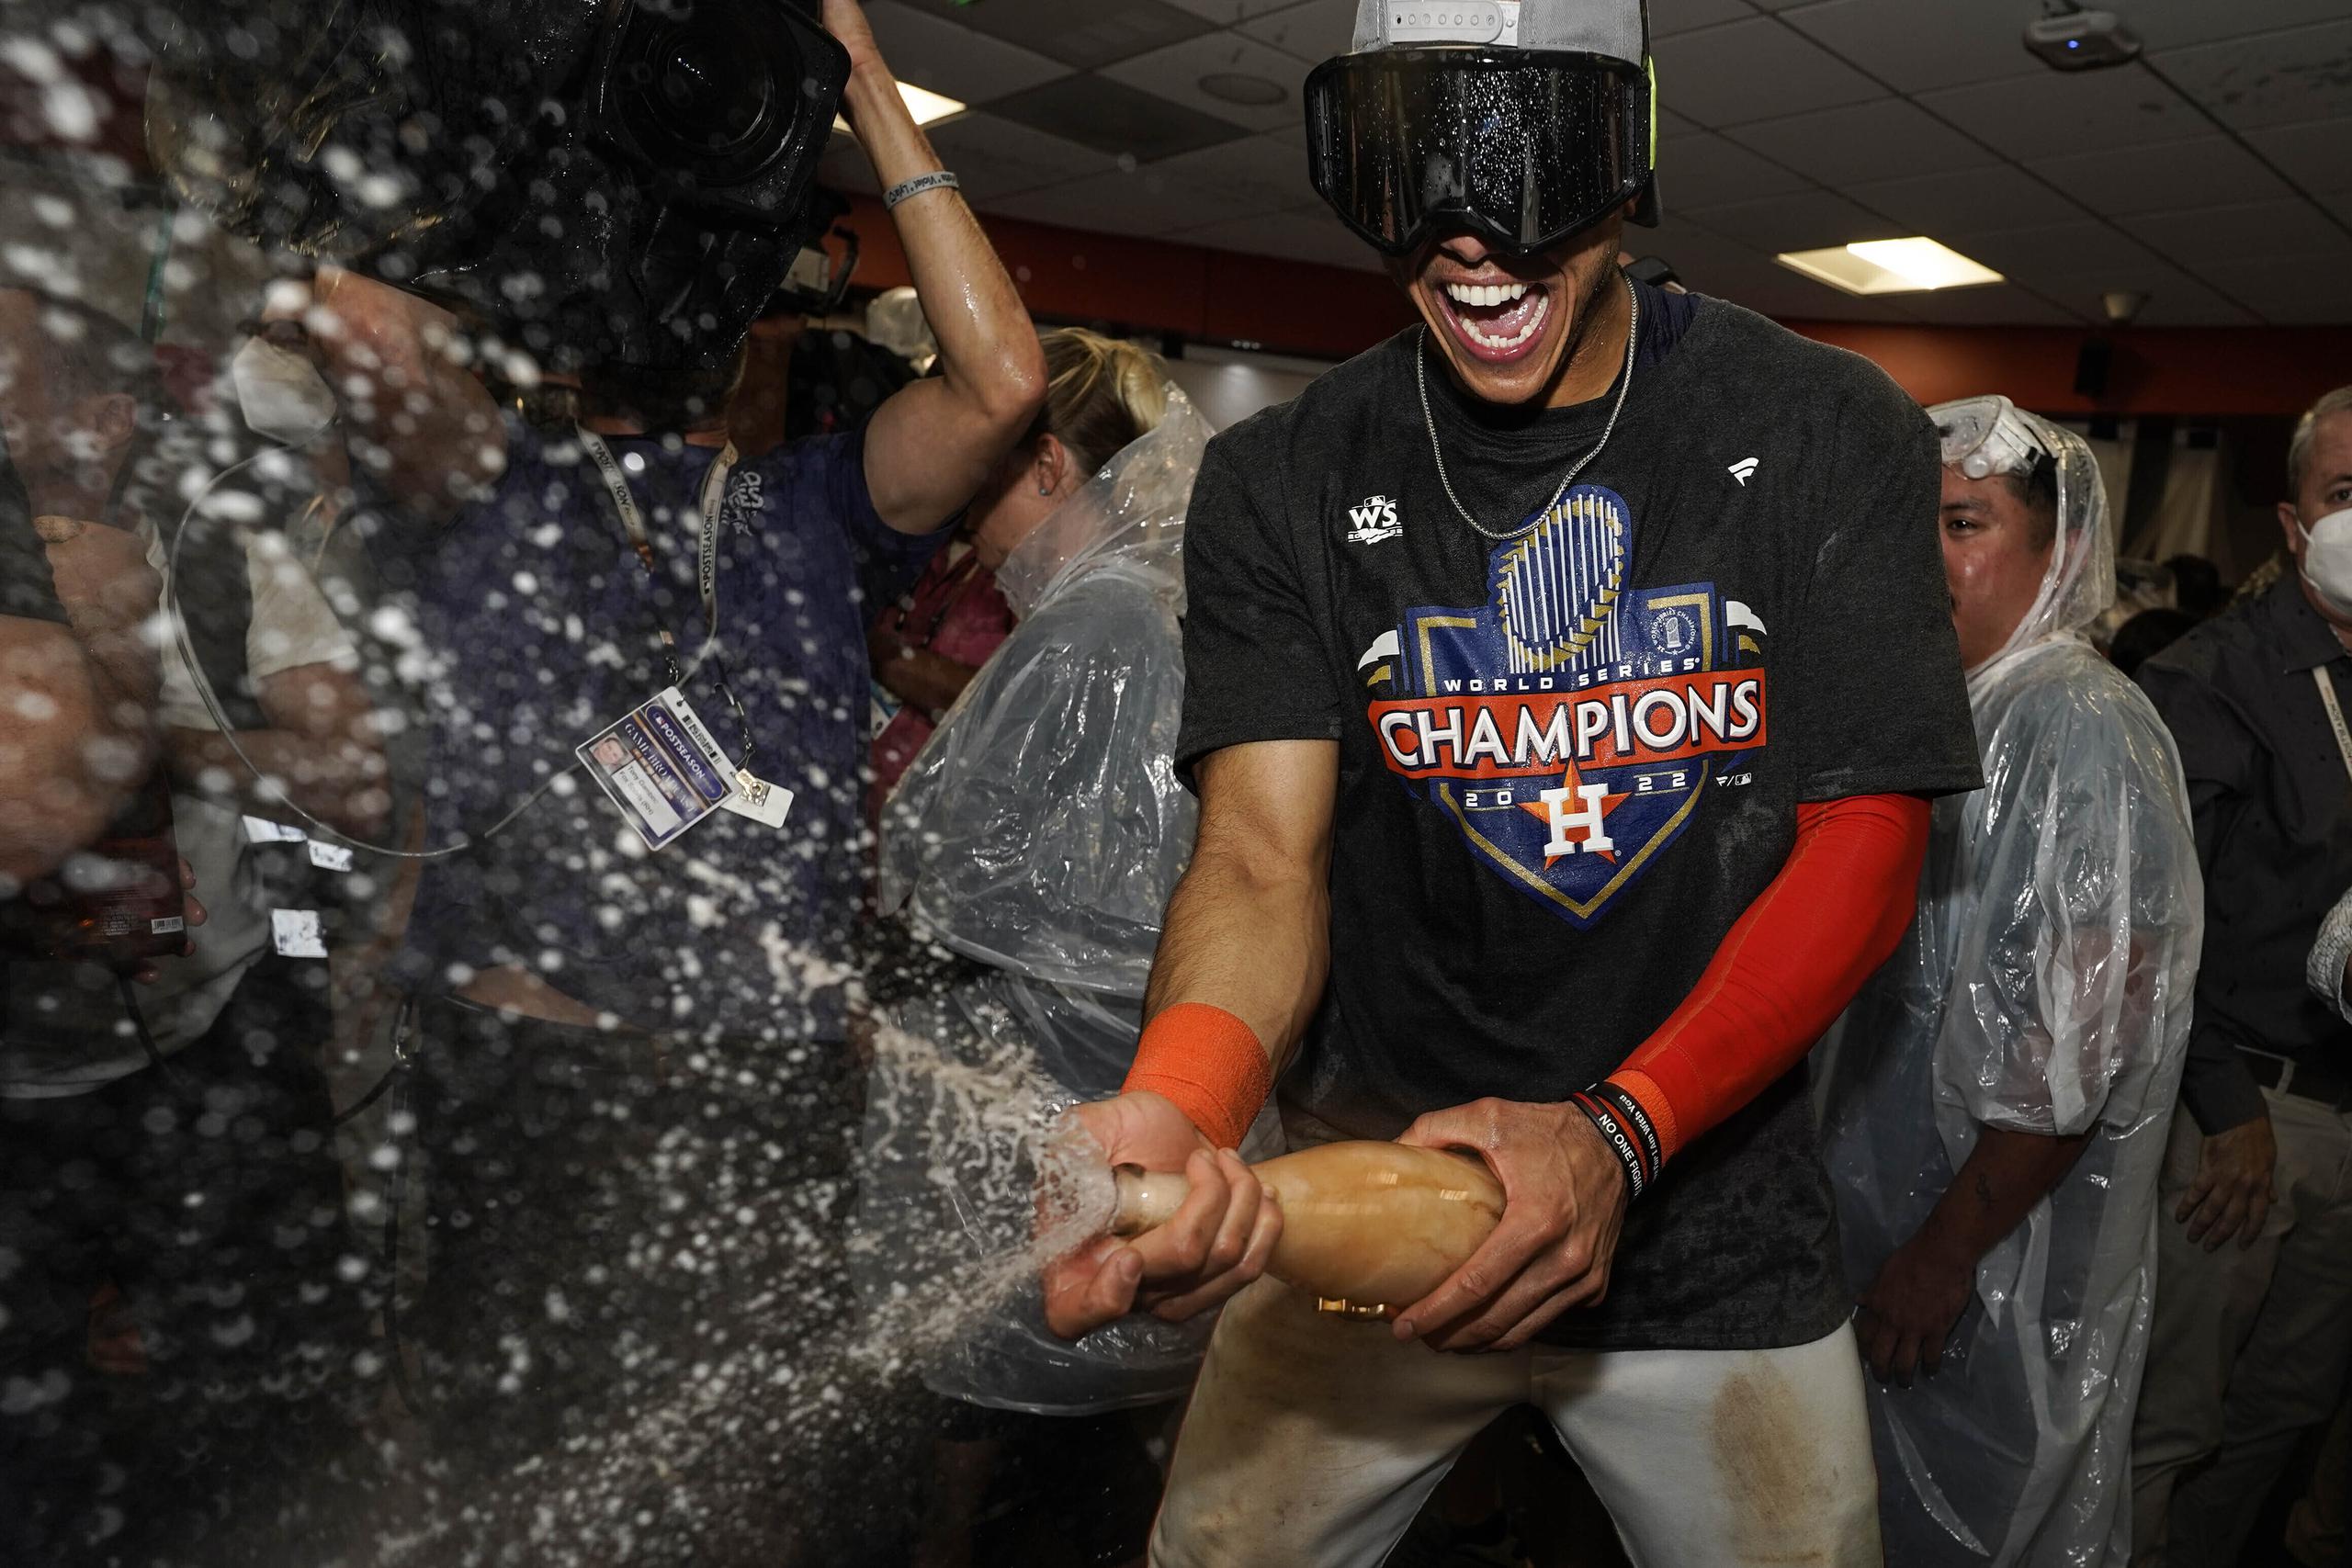 El dominicano Jeremy Peña, campocorto de los Astros de Houston, celebra con champaña tras ganar la Serie Mundial ante los Phillies.